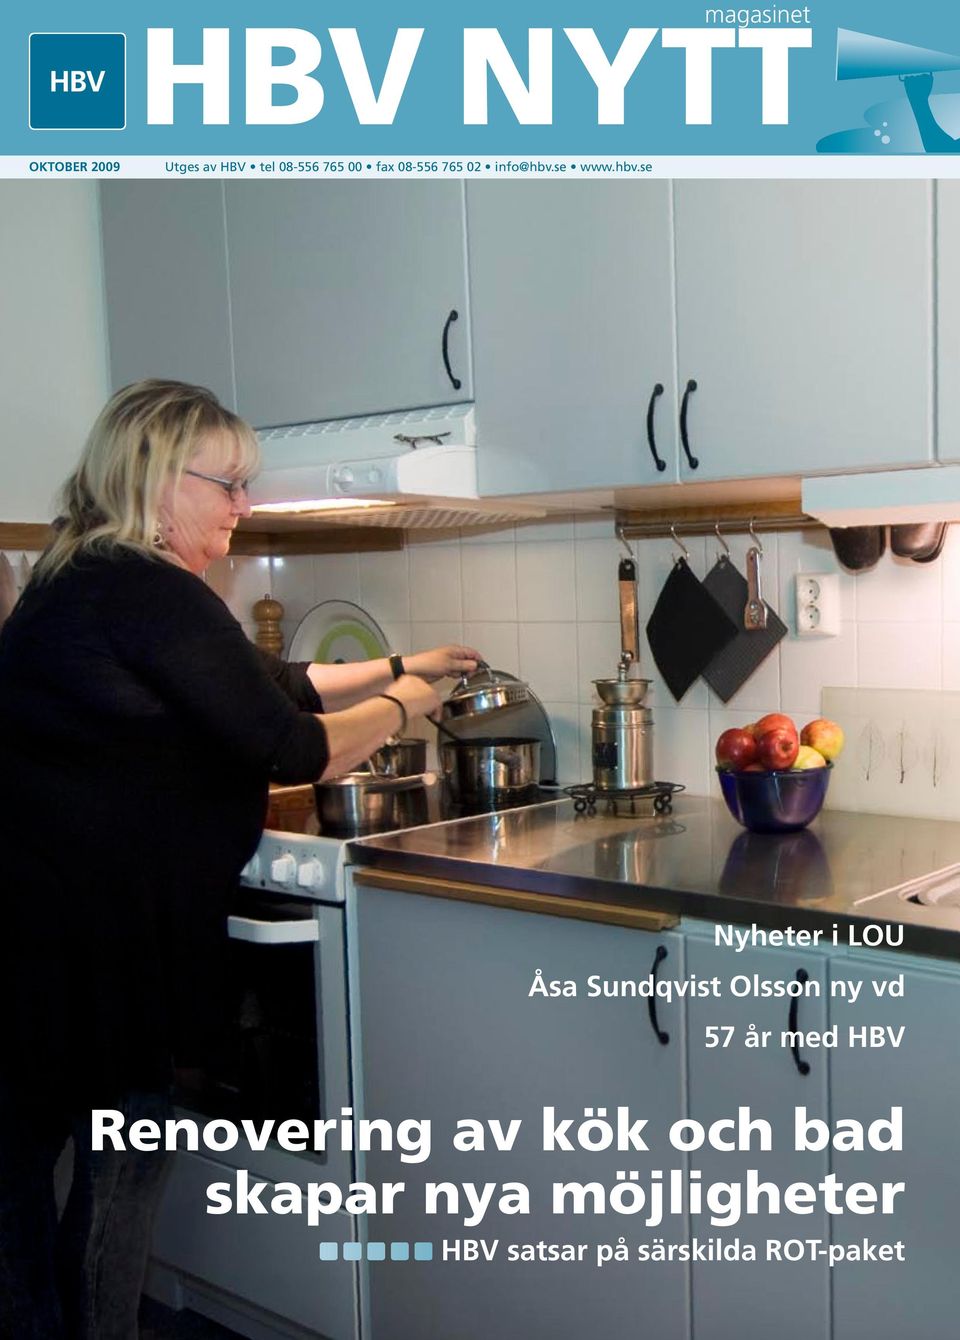 HBV NYTT. Renovering av kök och bad skapar nya möjligheter. Nyheter i LOU  Åsa Sundqvist Olsson ny vd 57 år med HBV. HBV satsar på särskilda ROT-paket  - PDF Free Download